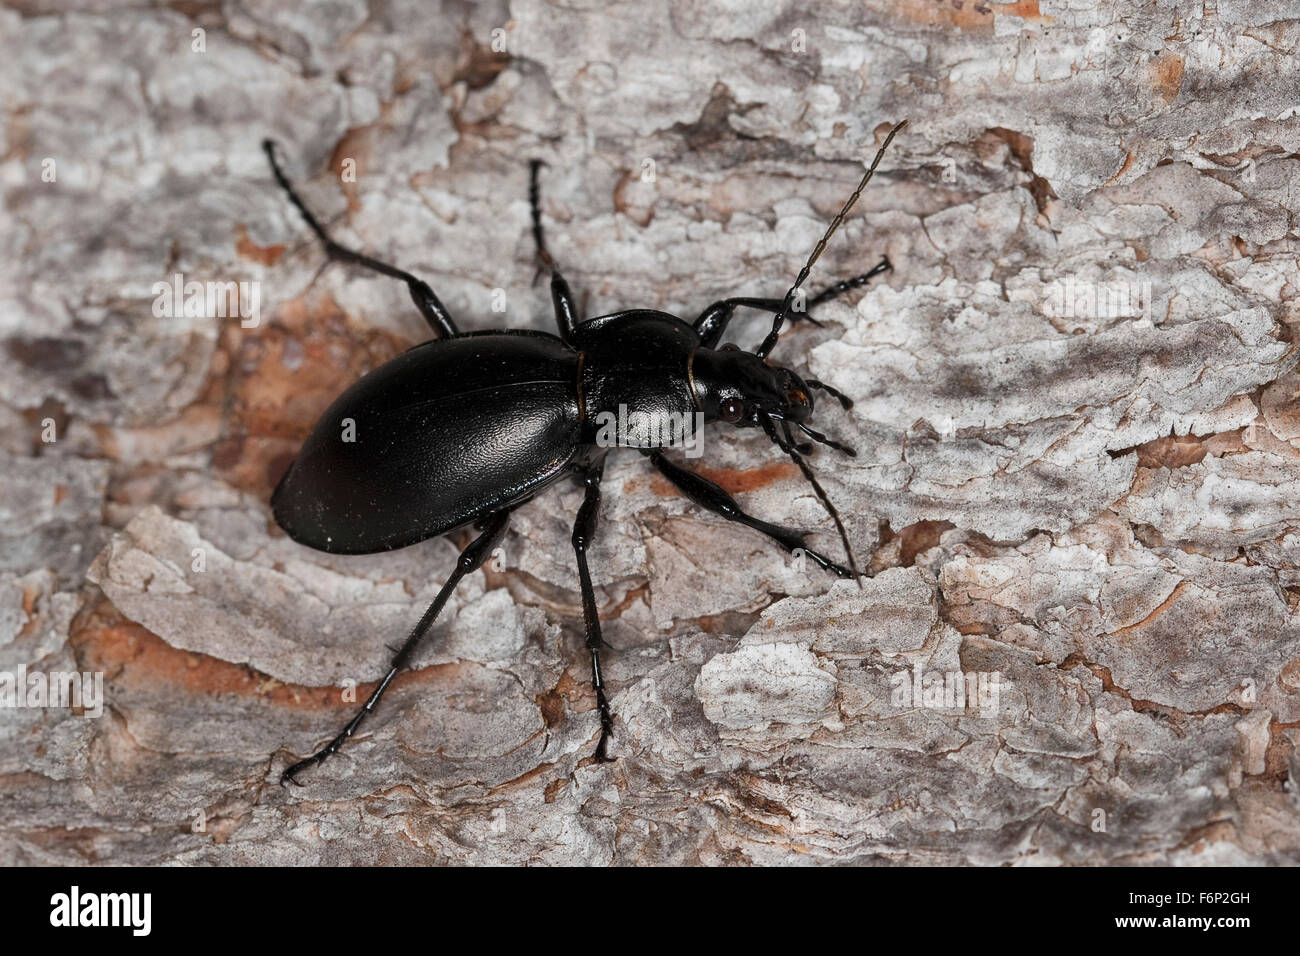 Smooth ground beetle, Glatter Laufkäfer, Glatt-Laufkäfer, Carabus glabratus, Oreocarabus glabratus Stock Photo